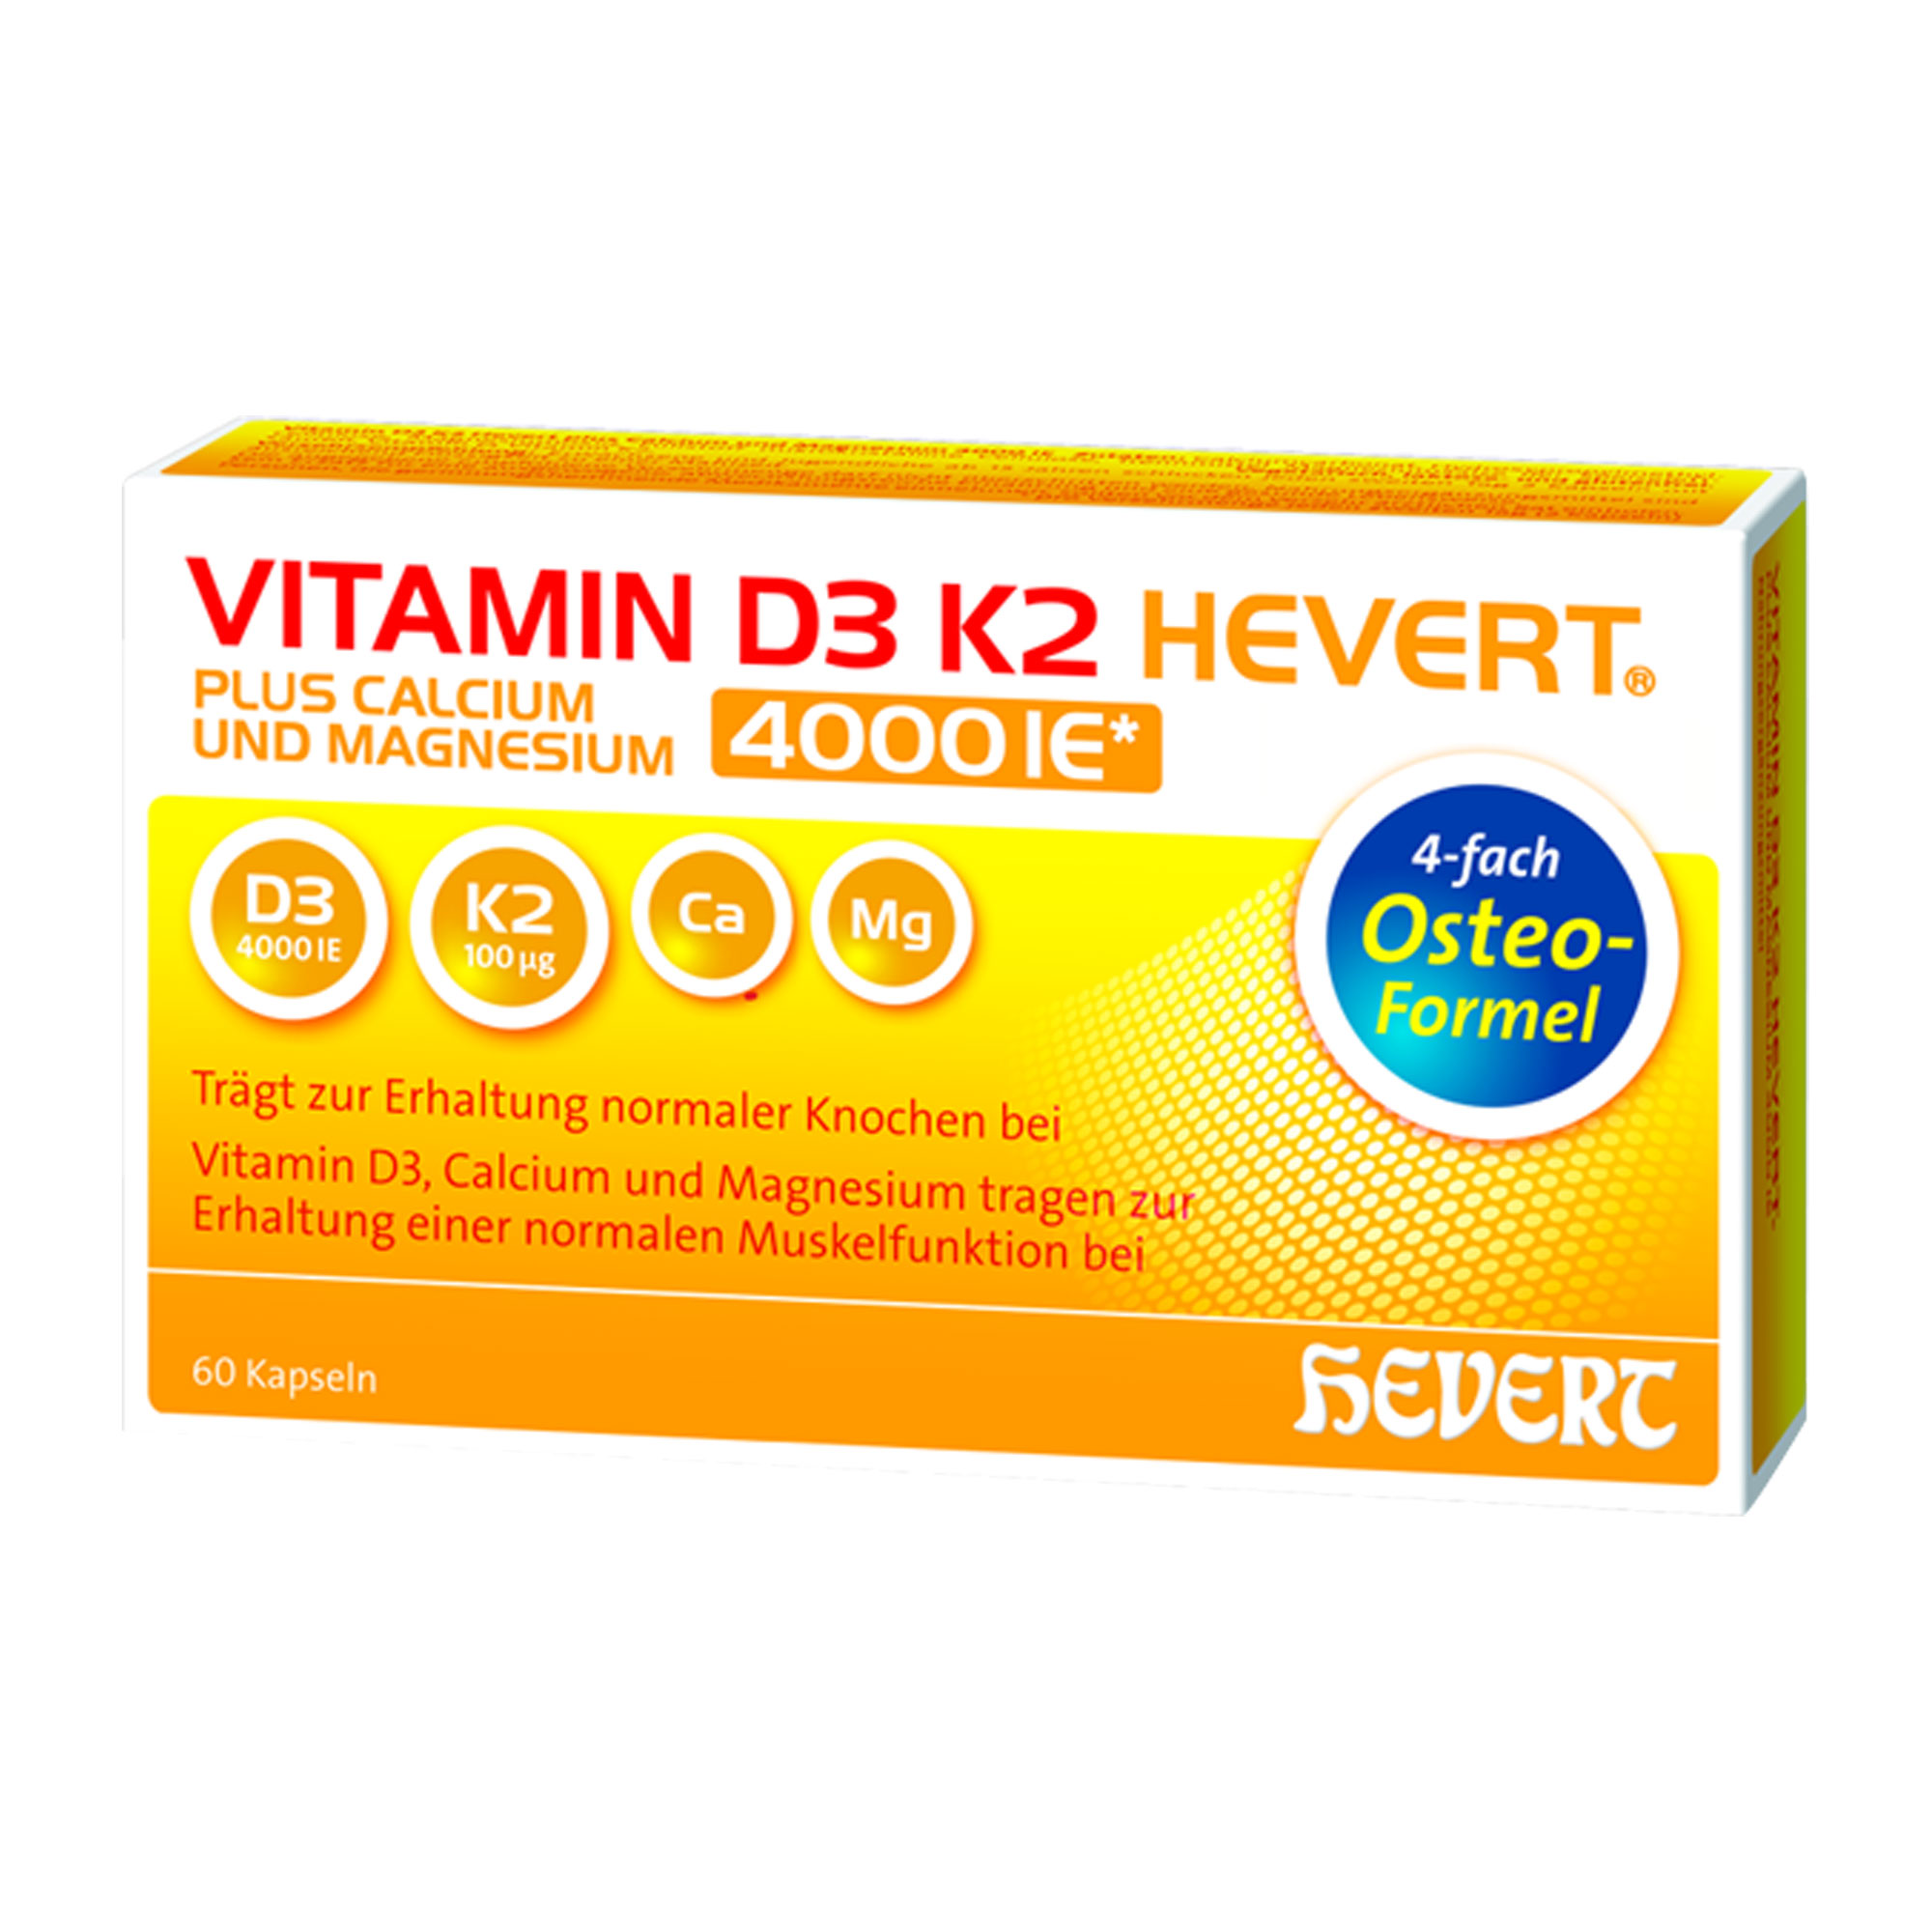 Nahrungsergänzungsmittel mit 4-fach Osteo-Formel aus Vitamin D3, Vitamin K2, Calcium und Magnesium. Für gesunde Knochen und Muskeln.